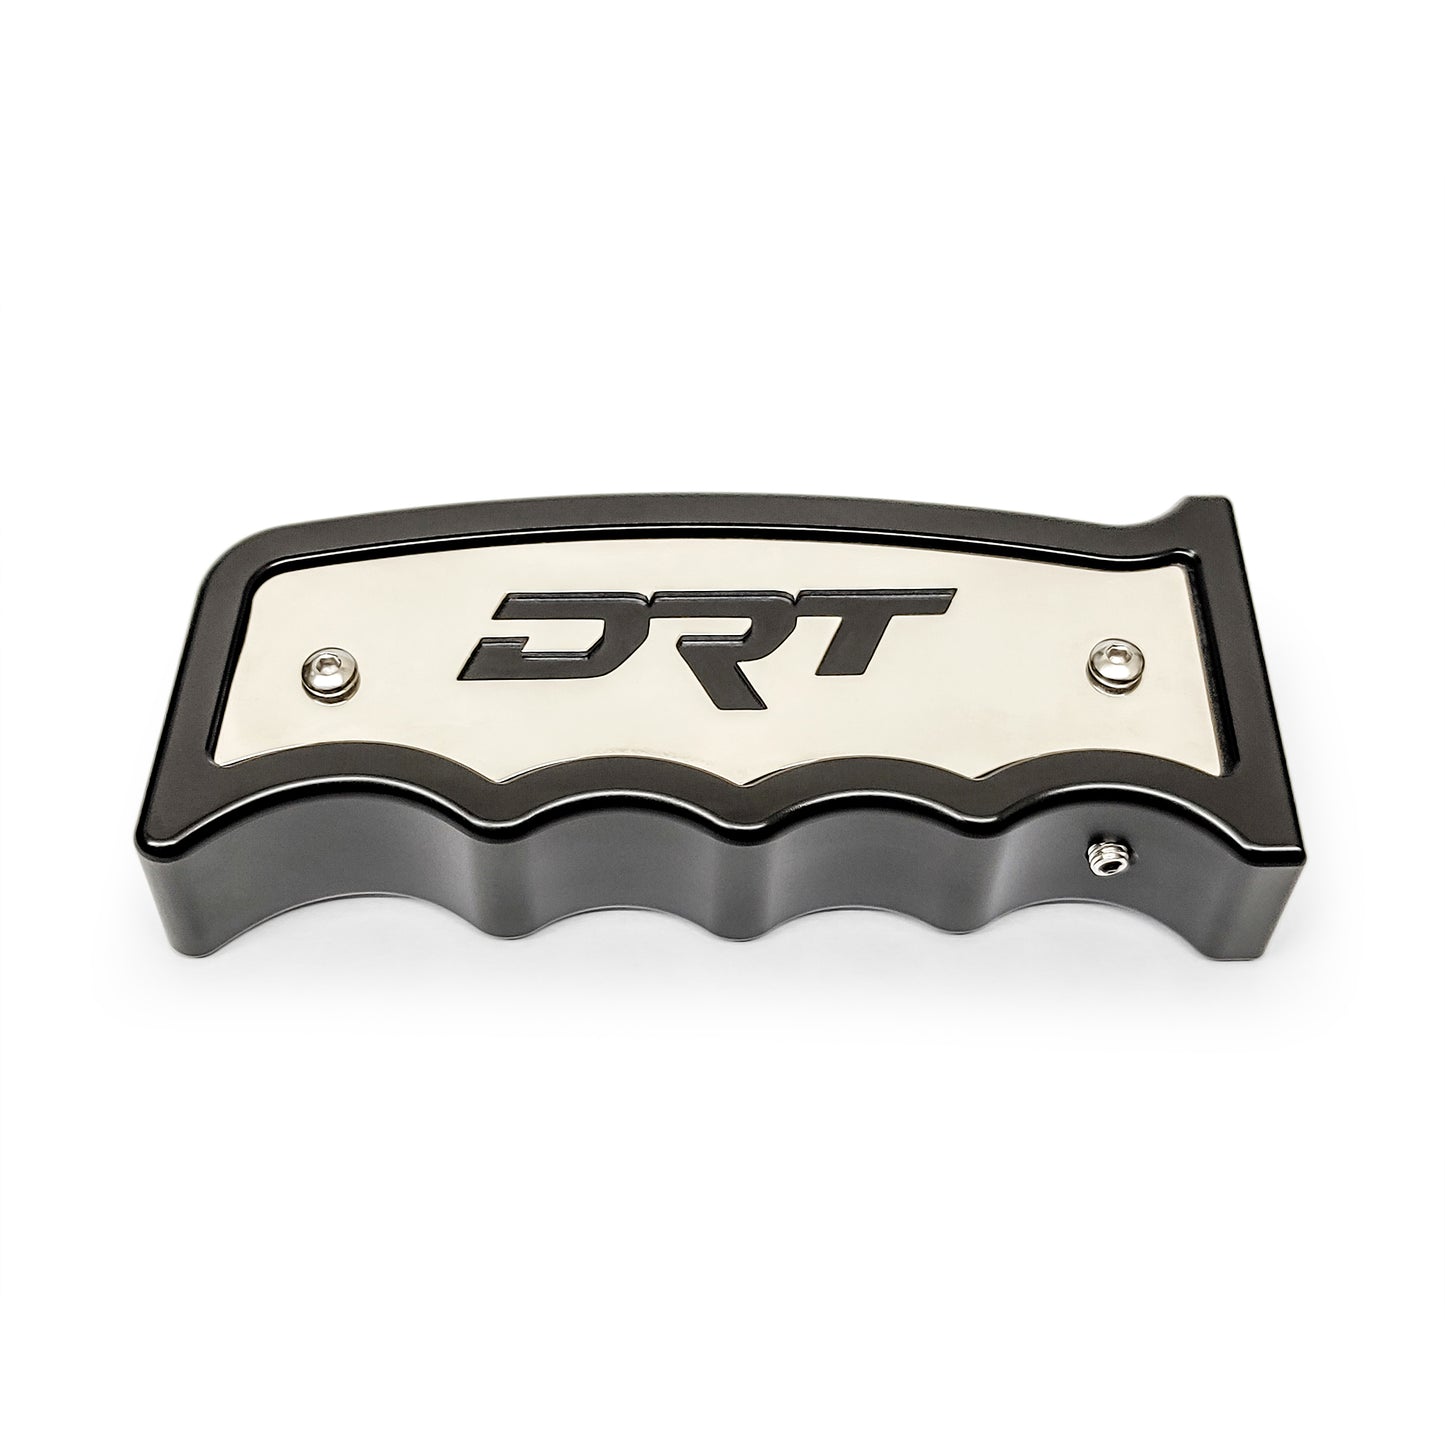 DRT Motorsports Grip Shifter V2.0 side view 